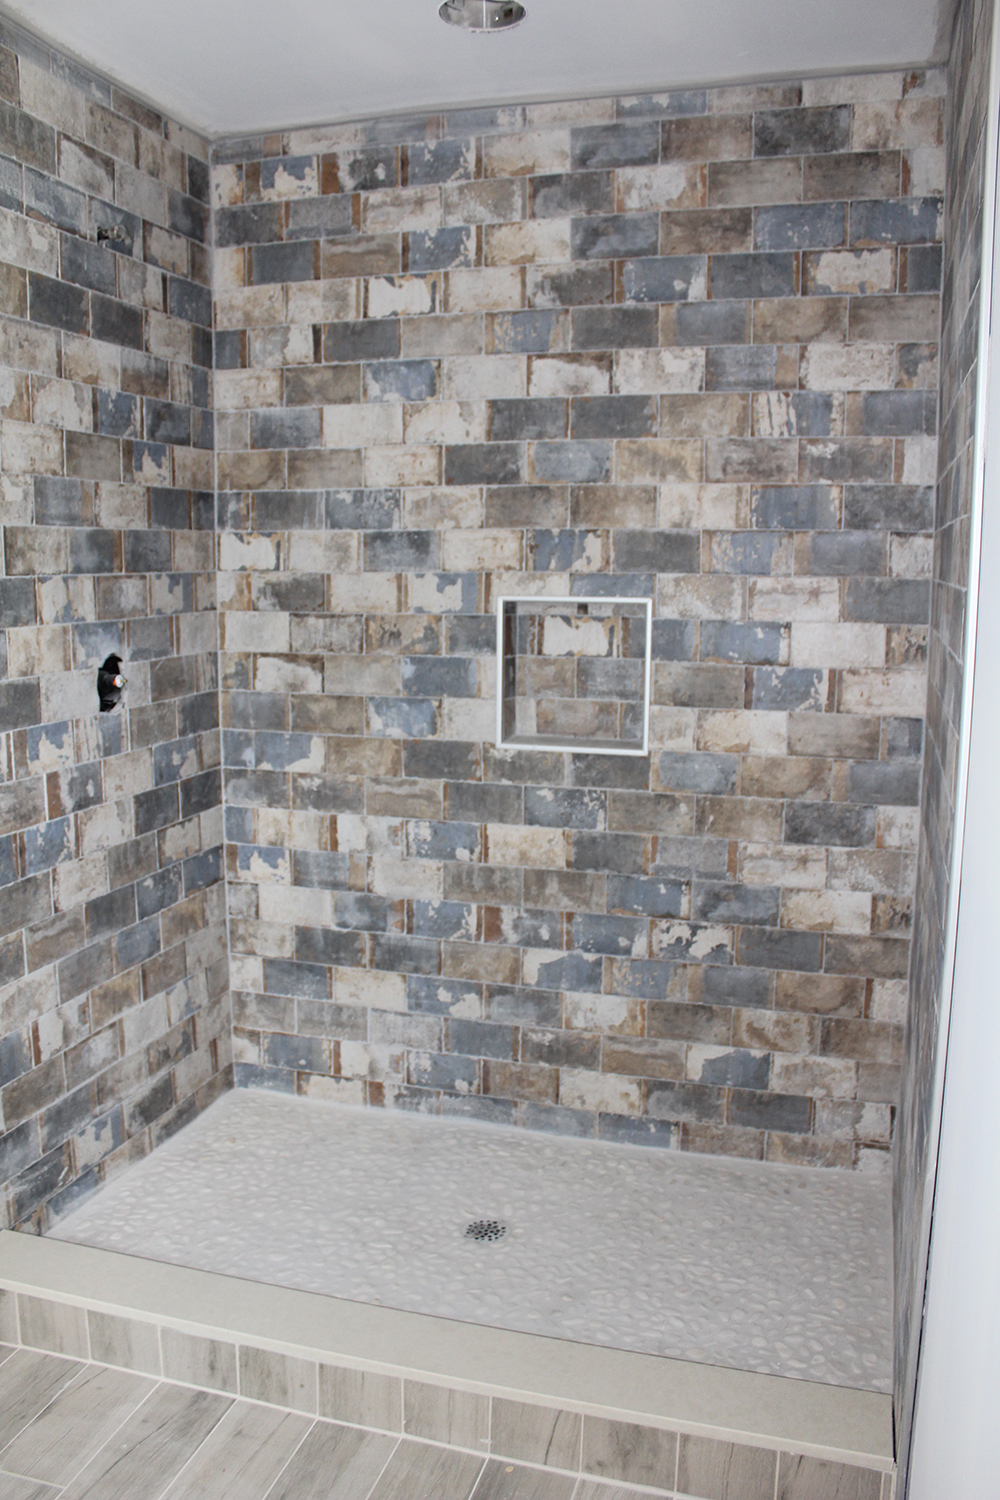 Natural Stone Tile Vs Porcelain, Slate Flooring Vs Ceramic Tile Bathroom Floor Tiles